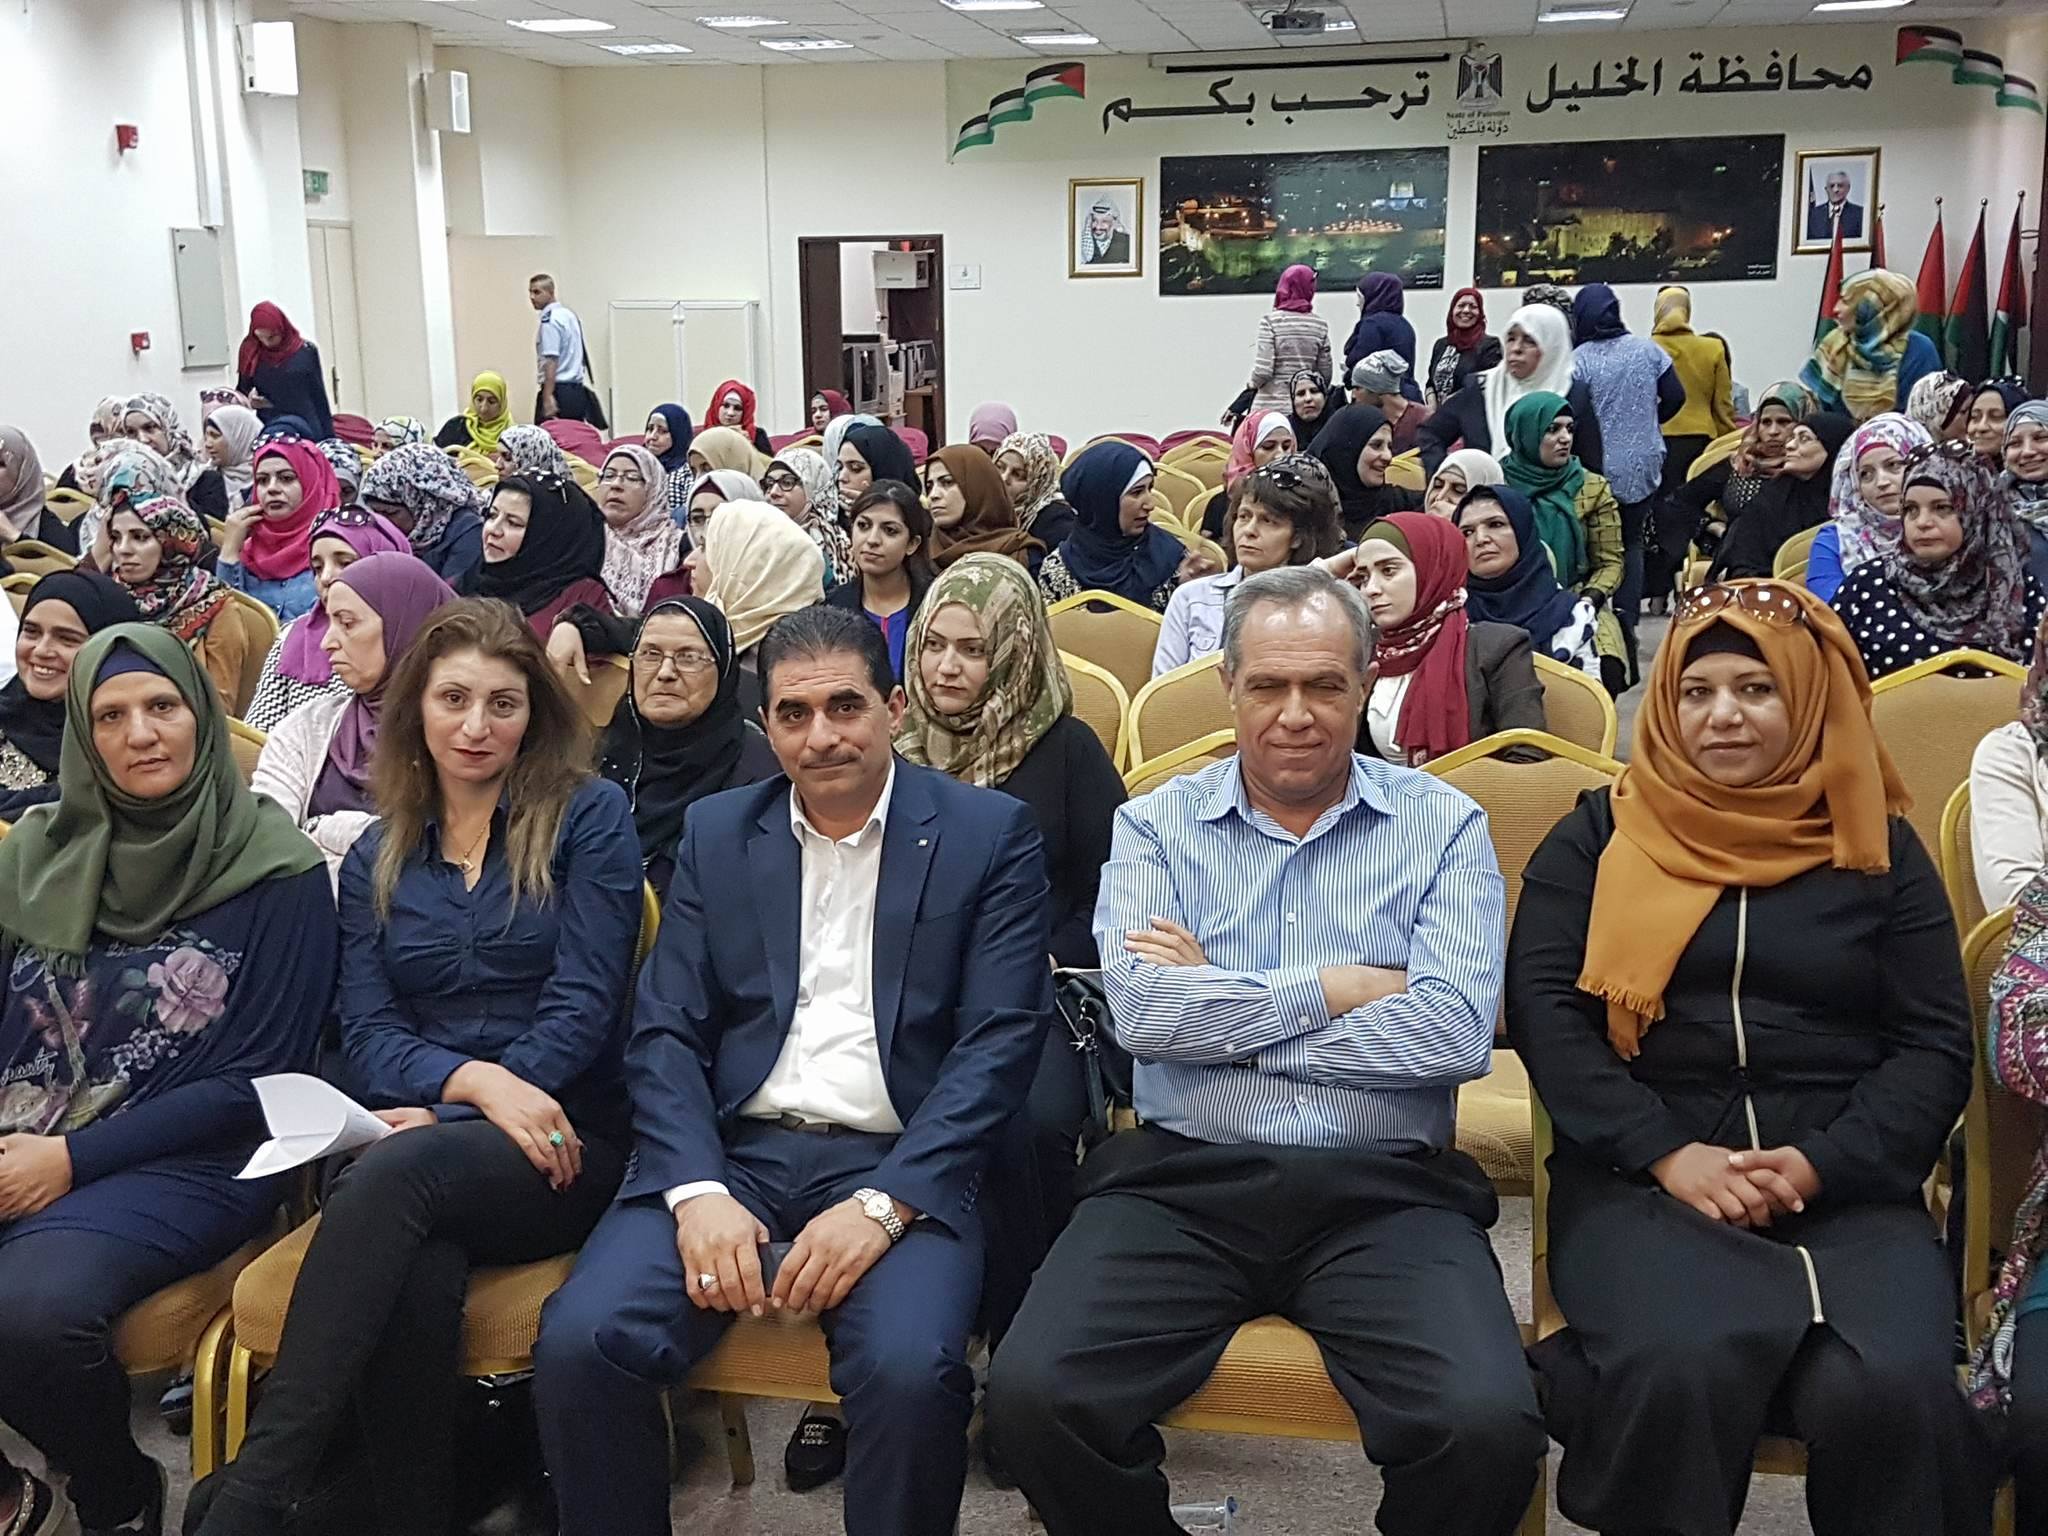  مشاركة مؤسسة ادوار للتغيير الاجتماعي في اجتماع المجلس النسوي العام في محافظة الخليل